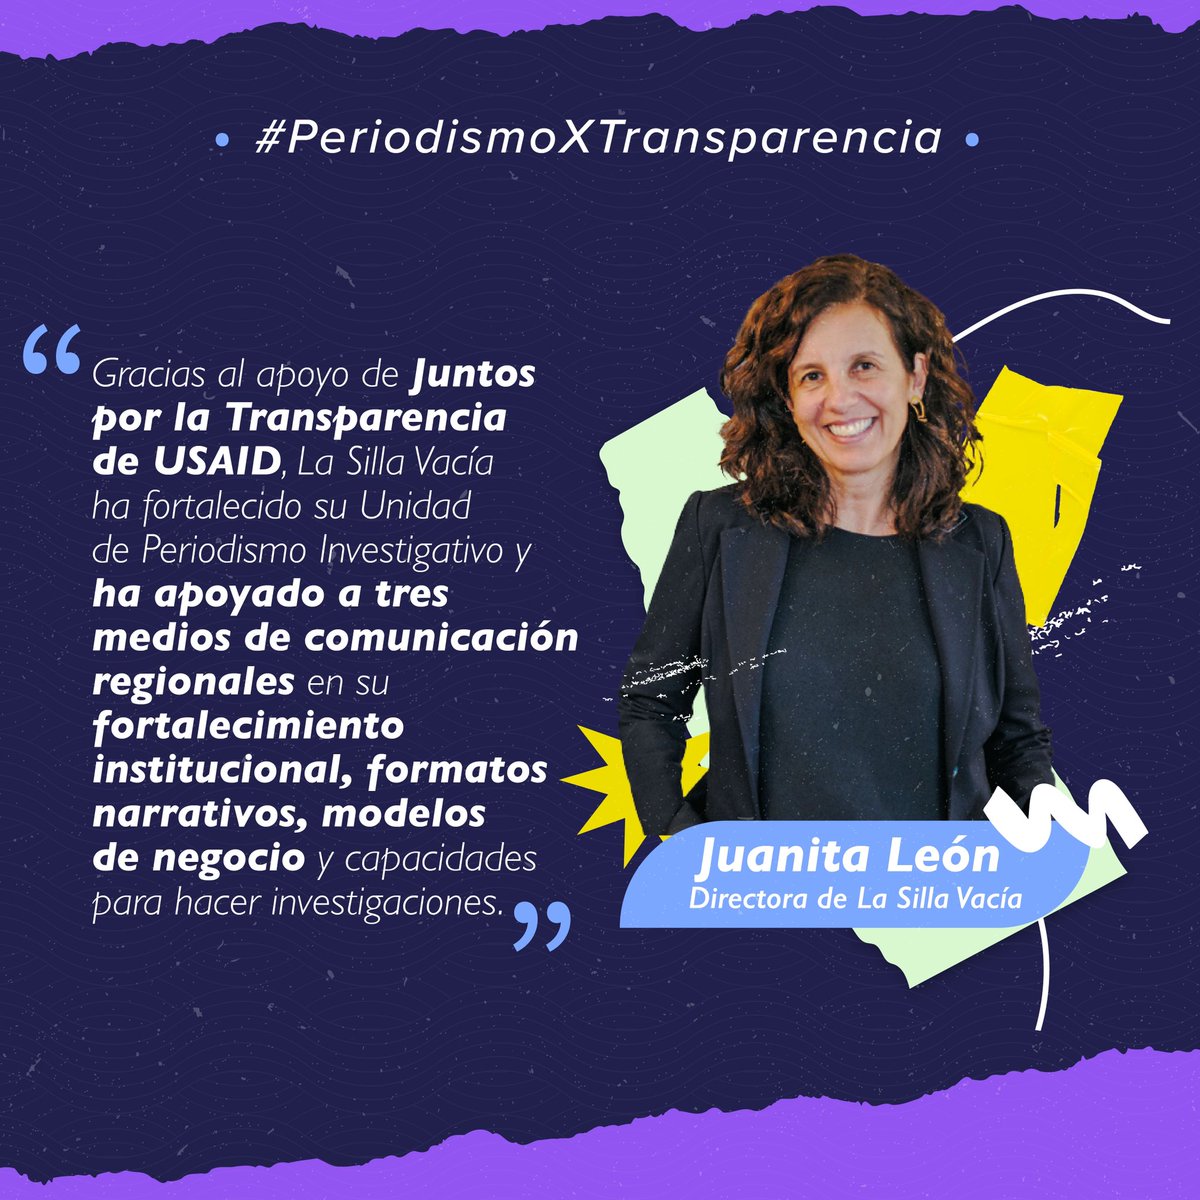 Juanita León, directora del medio de comunicación @LaSillaVacia nos cuenta cómo desde nuestro @ProgramaJxT, hemos contribuido a fortalecer el periodismo de investigación en Colombia. ¡Léela aquí! 👇 Día de la #LibertadDePrensa